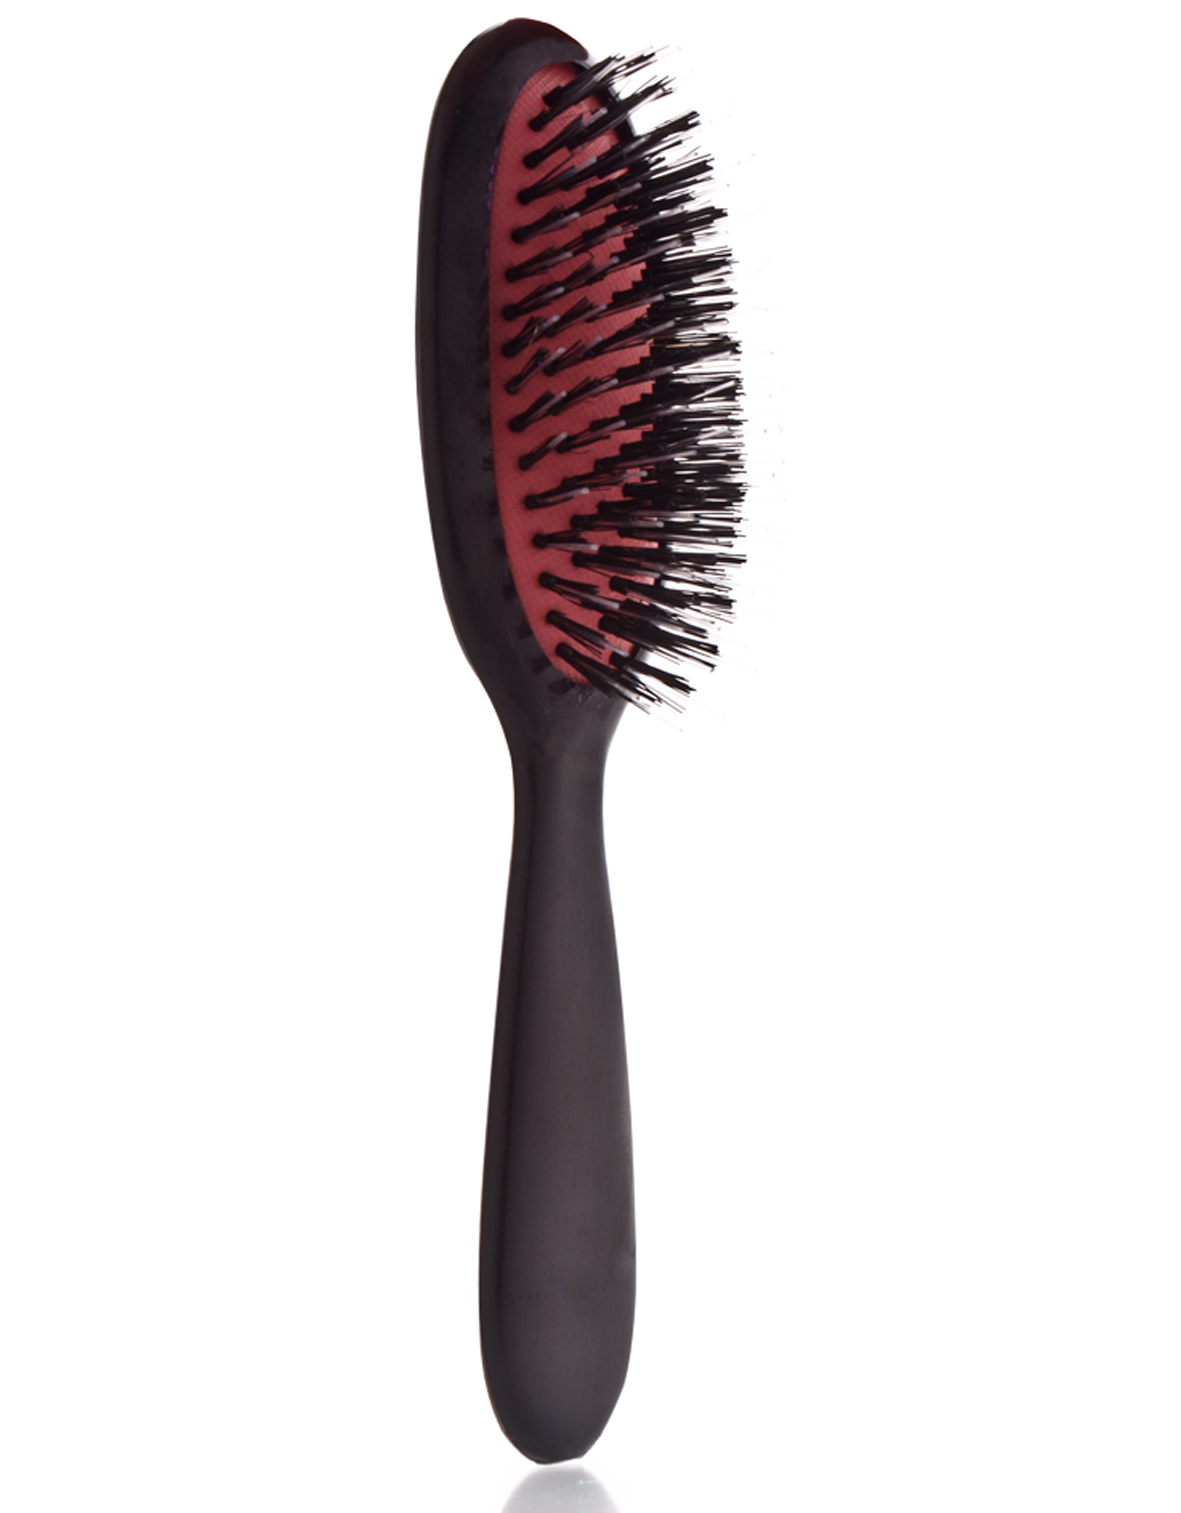 Beauty for You Hairbrush Extensions Small - malý kartáč na prodlužované vlasy, černý